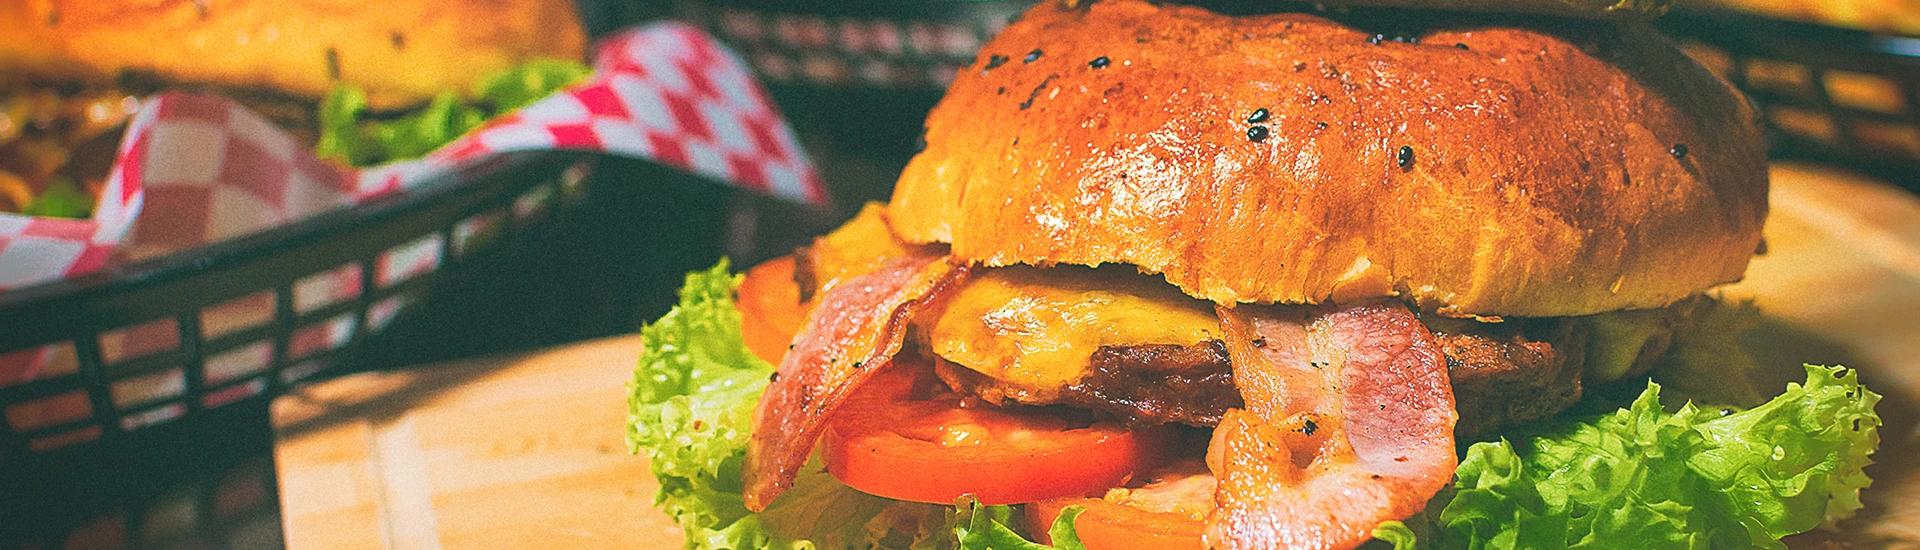 Saftiger Hamburger in einem Restaurant mit Bacoun, Fleisch, Tomaten und Salat beleg